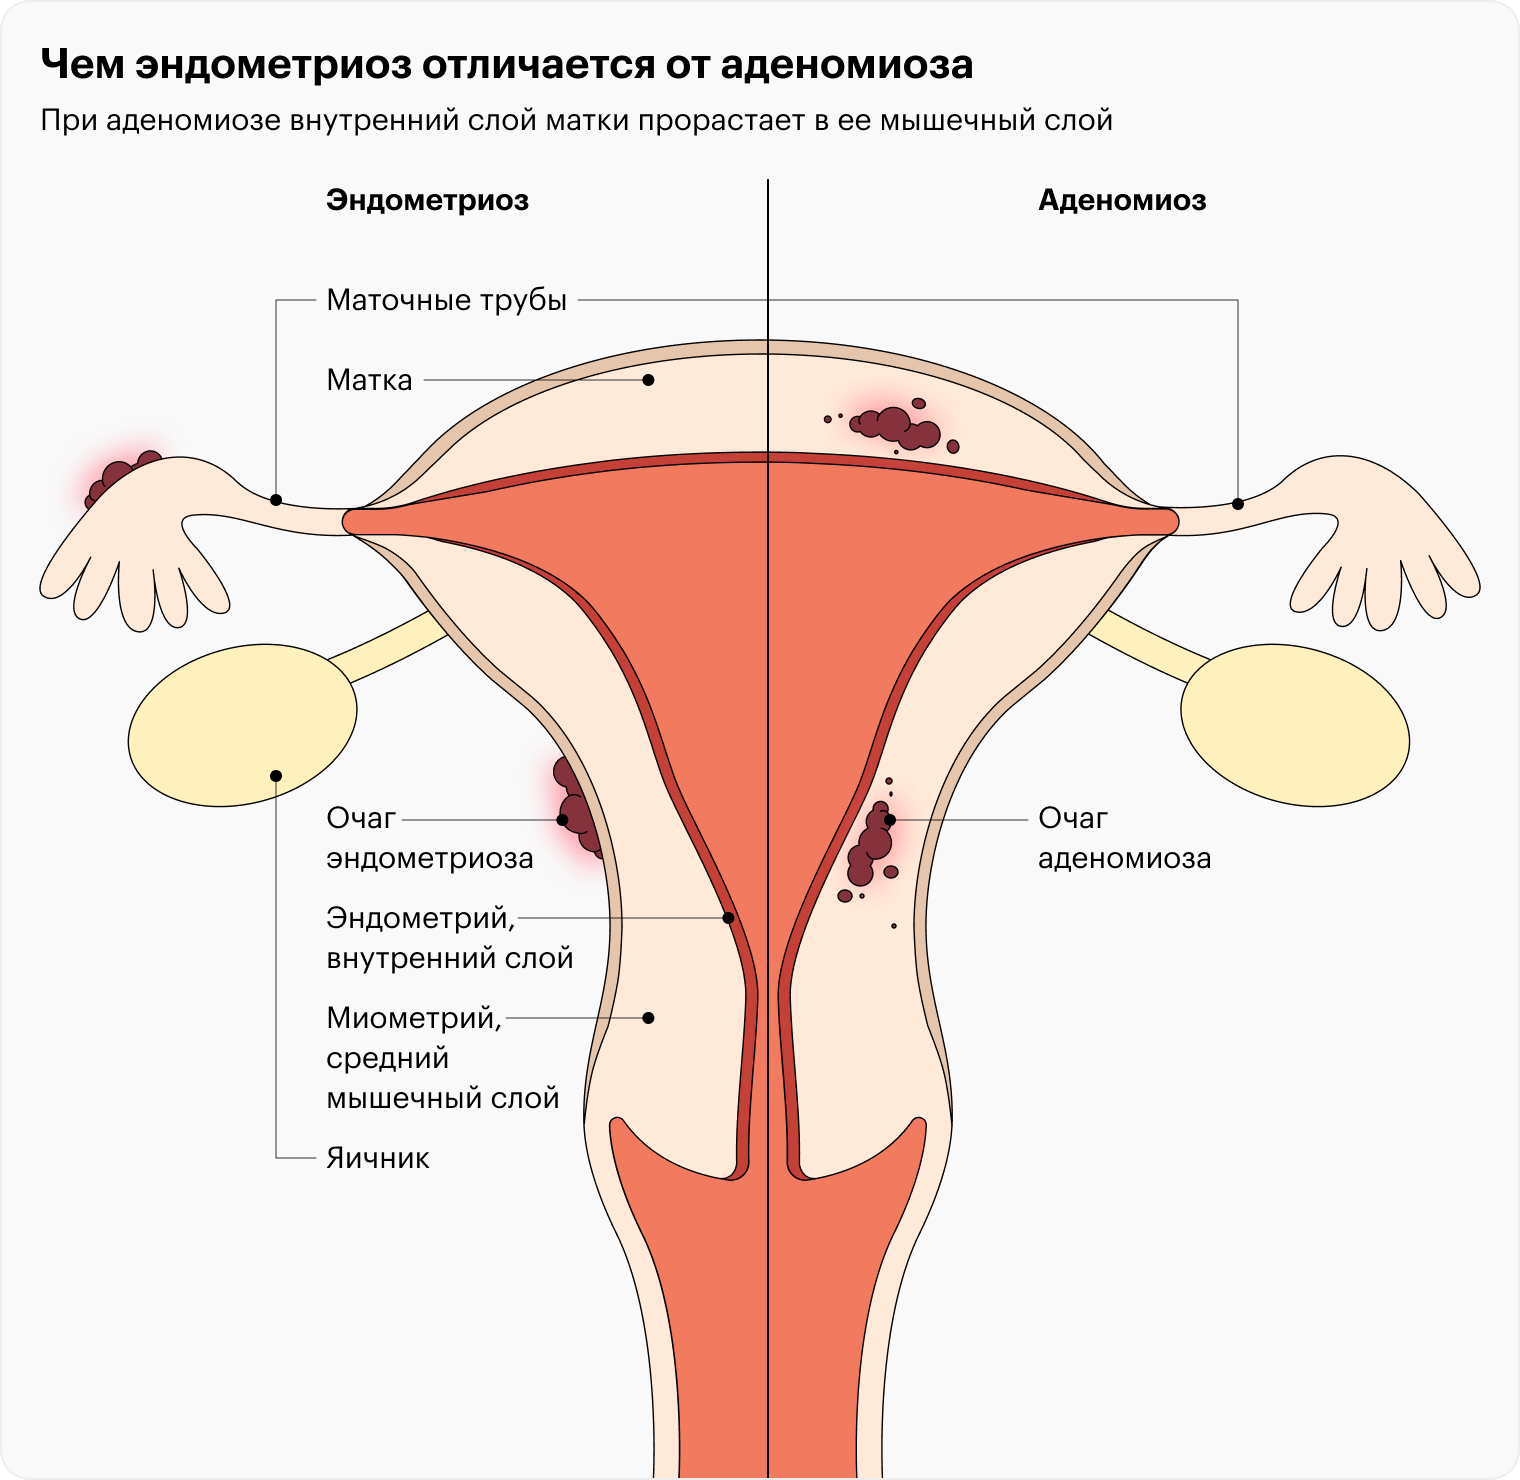 Лечение эндометриоза в ведущих центрах и клиниках России